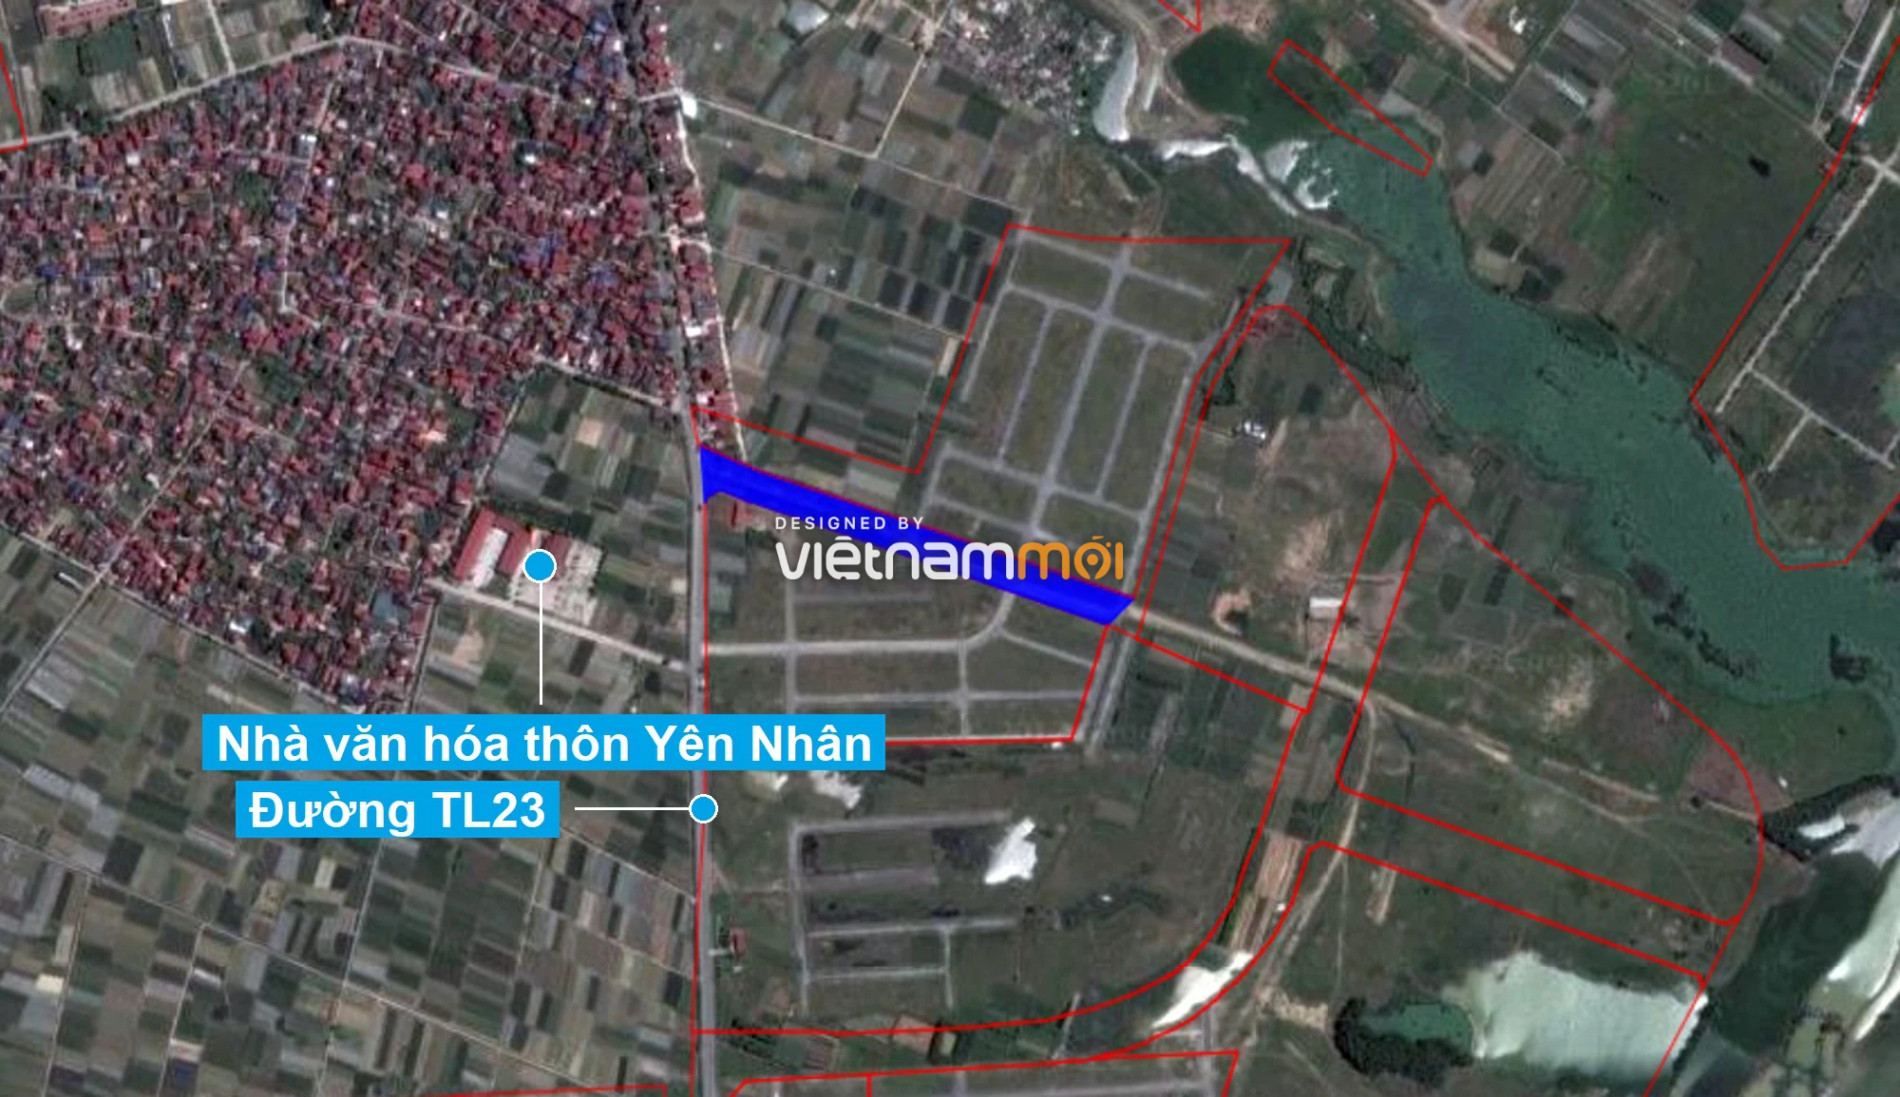 Những khu đất sắp thu hồi để mở đường ở xã Tiền Phong, Mê Linh, Hà Nội (phần 1) - Ảnh 2.